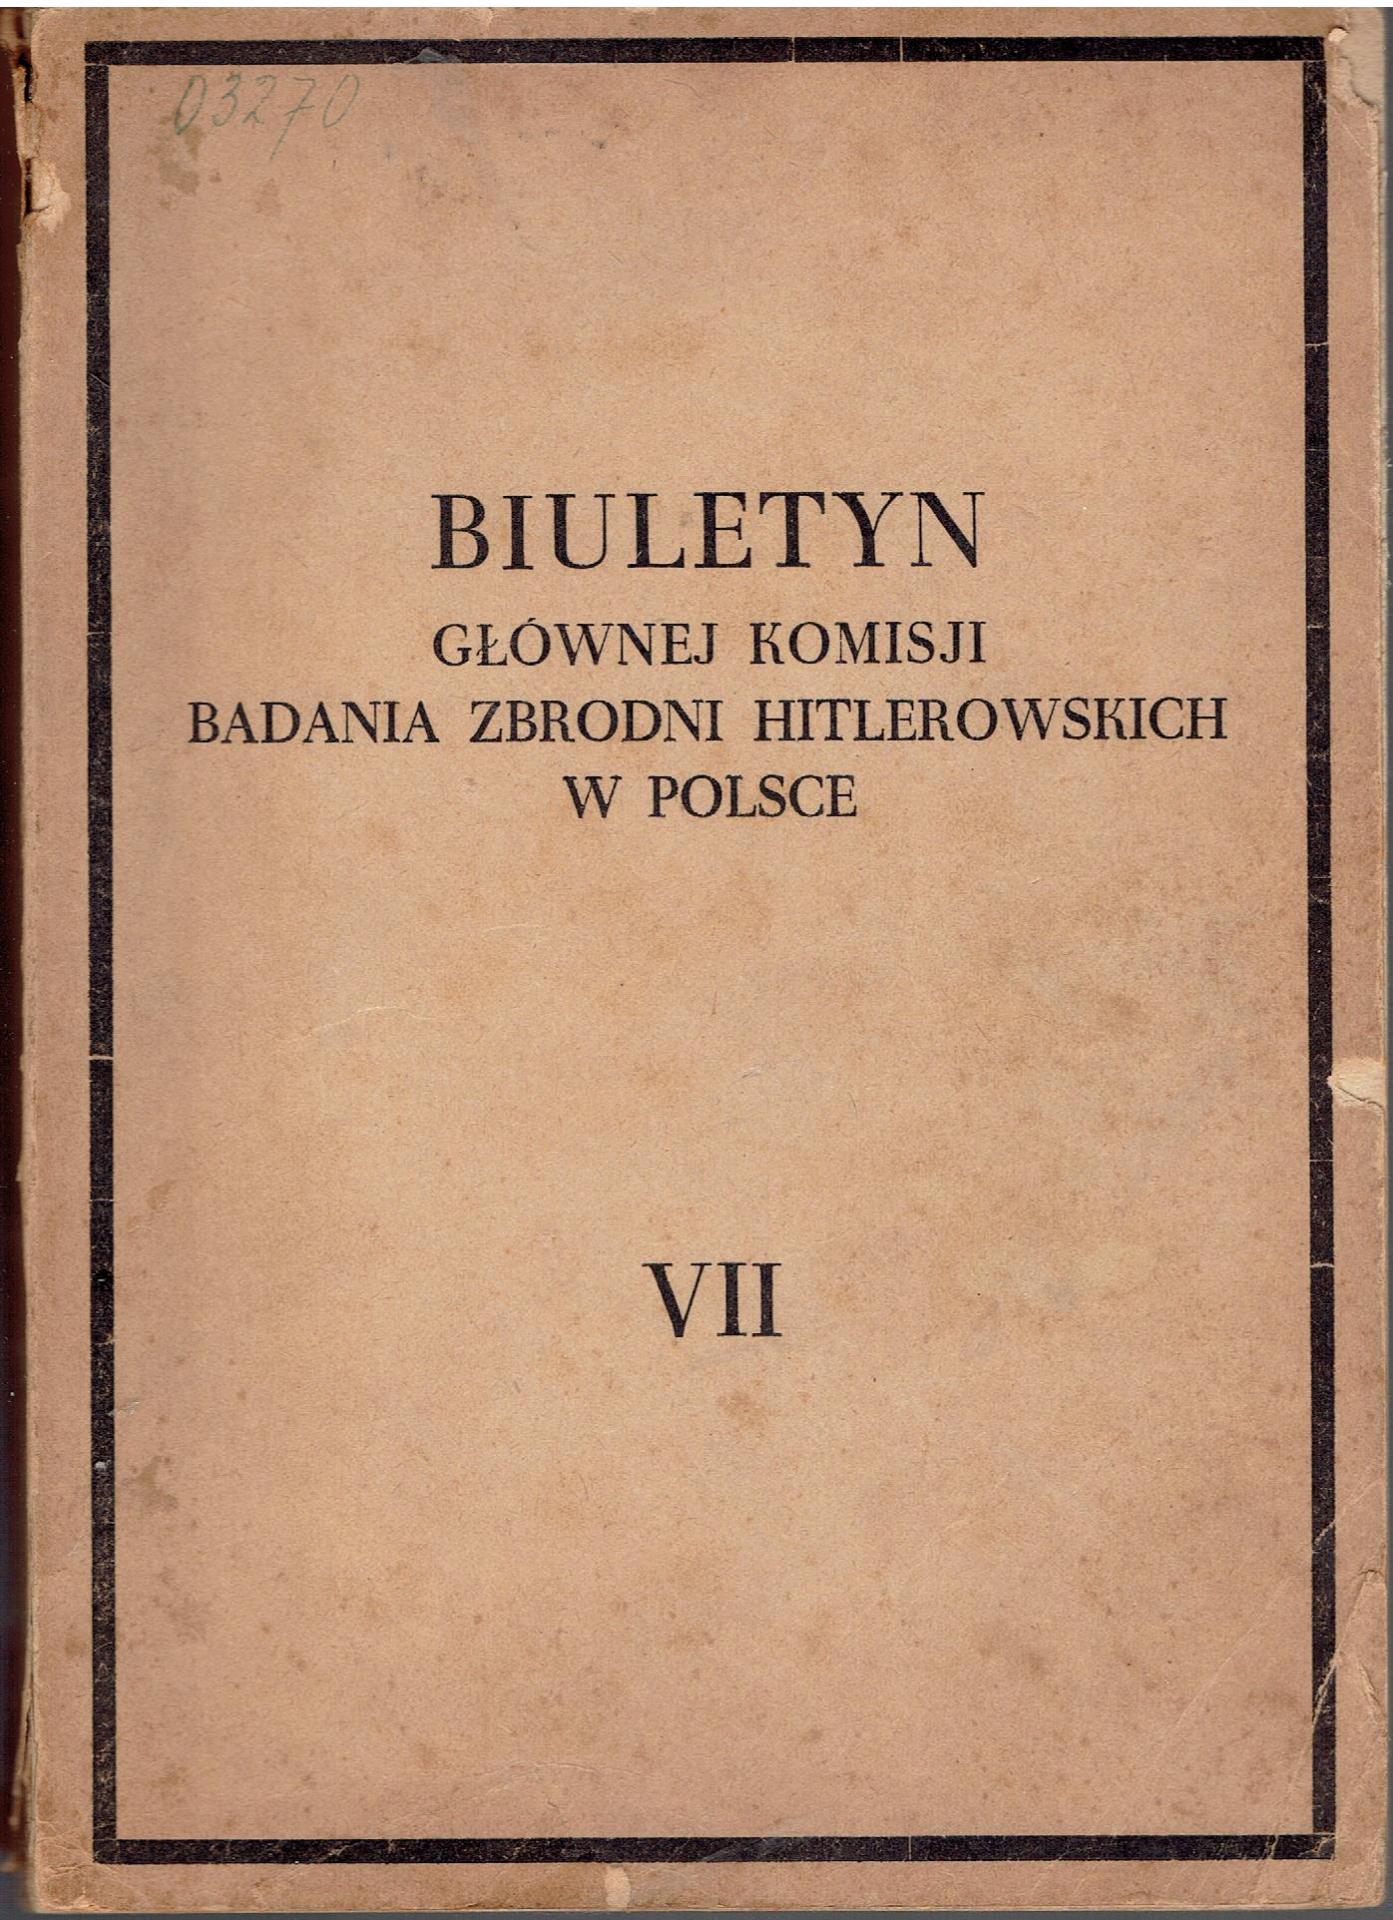 Biuletyn Głównej Komisji Badania Zbrodni Hitlerowskich w Polsce tom VII